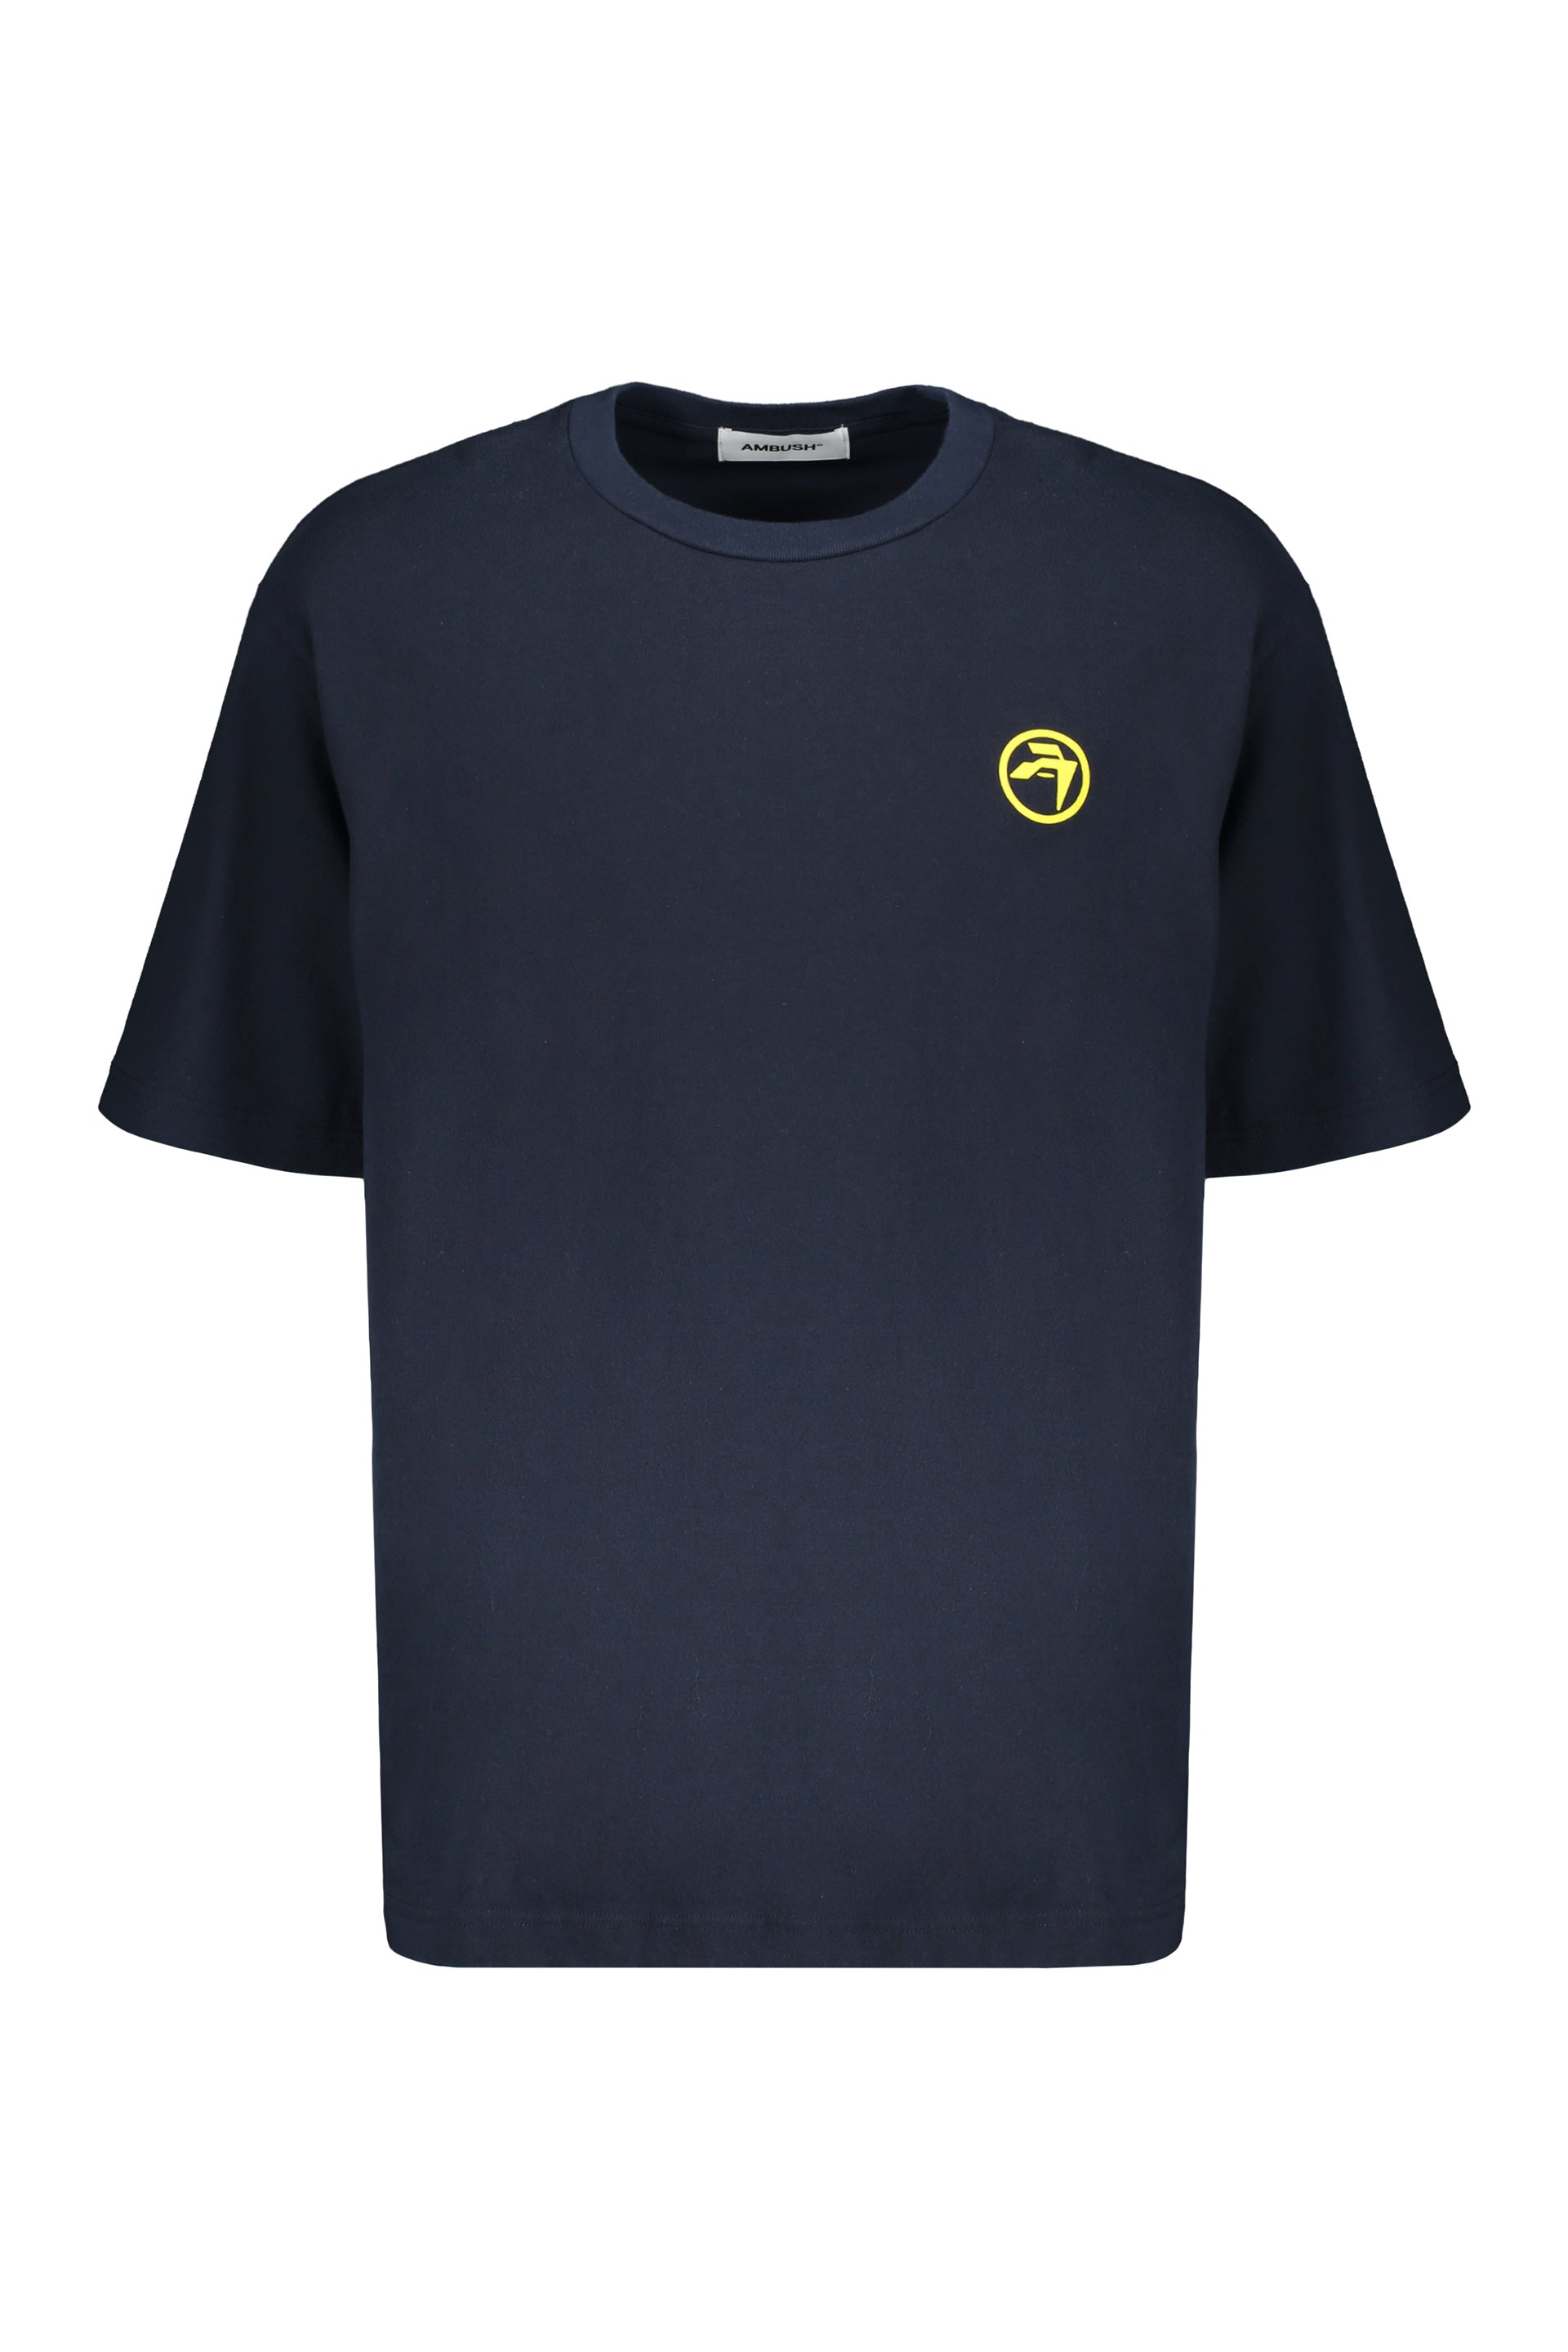 AMBUSH-OUTLET-SALE-Cotton-T-shirt-Shirts-L-ARCHIVE-COLLECTION_cfa30a09-ea34-4361-91a6-161ef78d874d.jpg